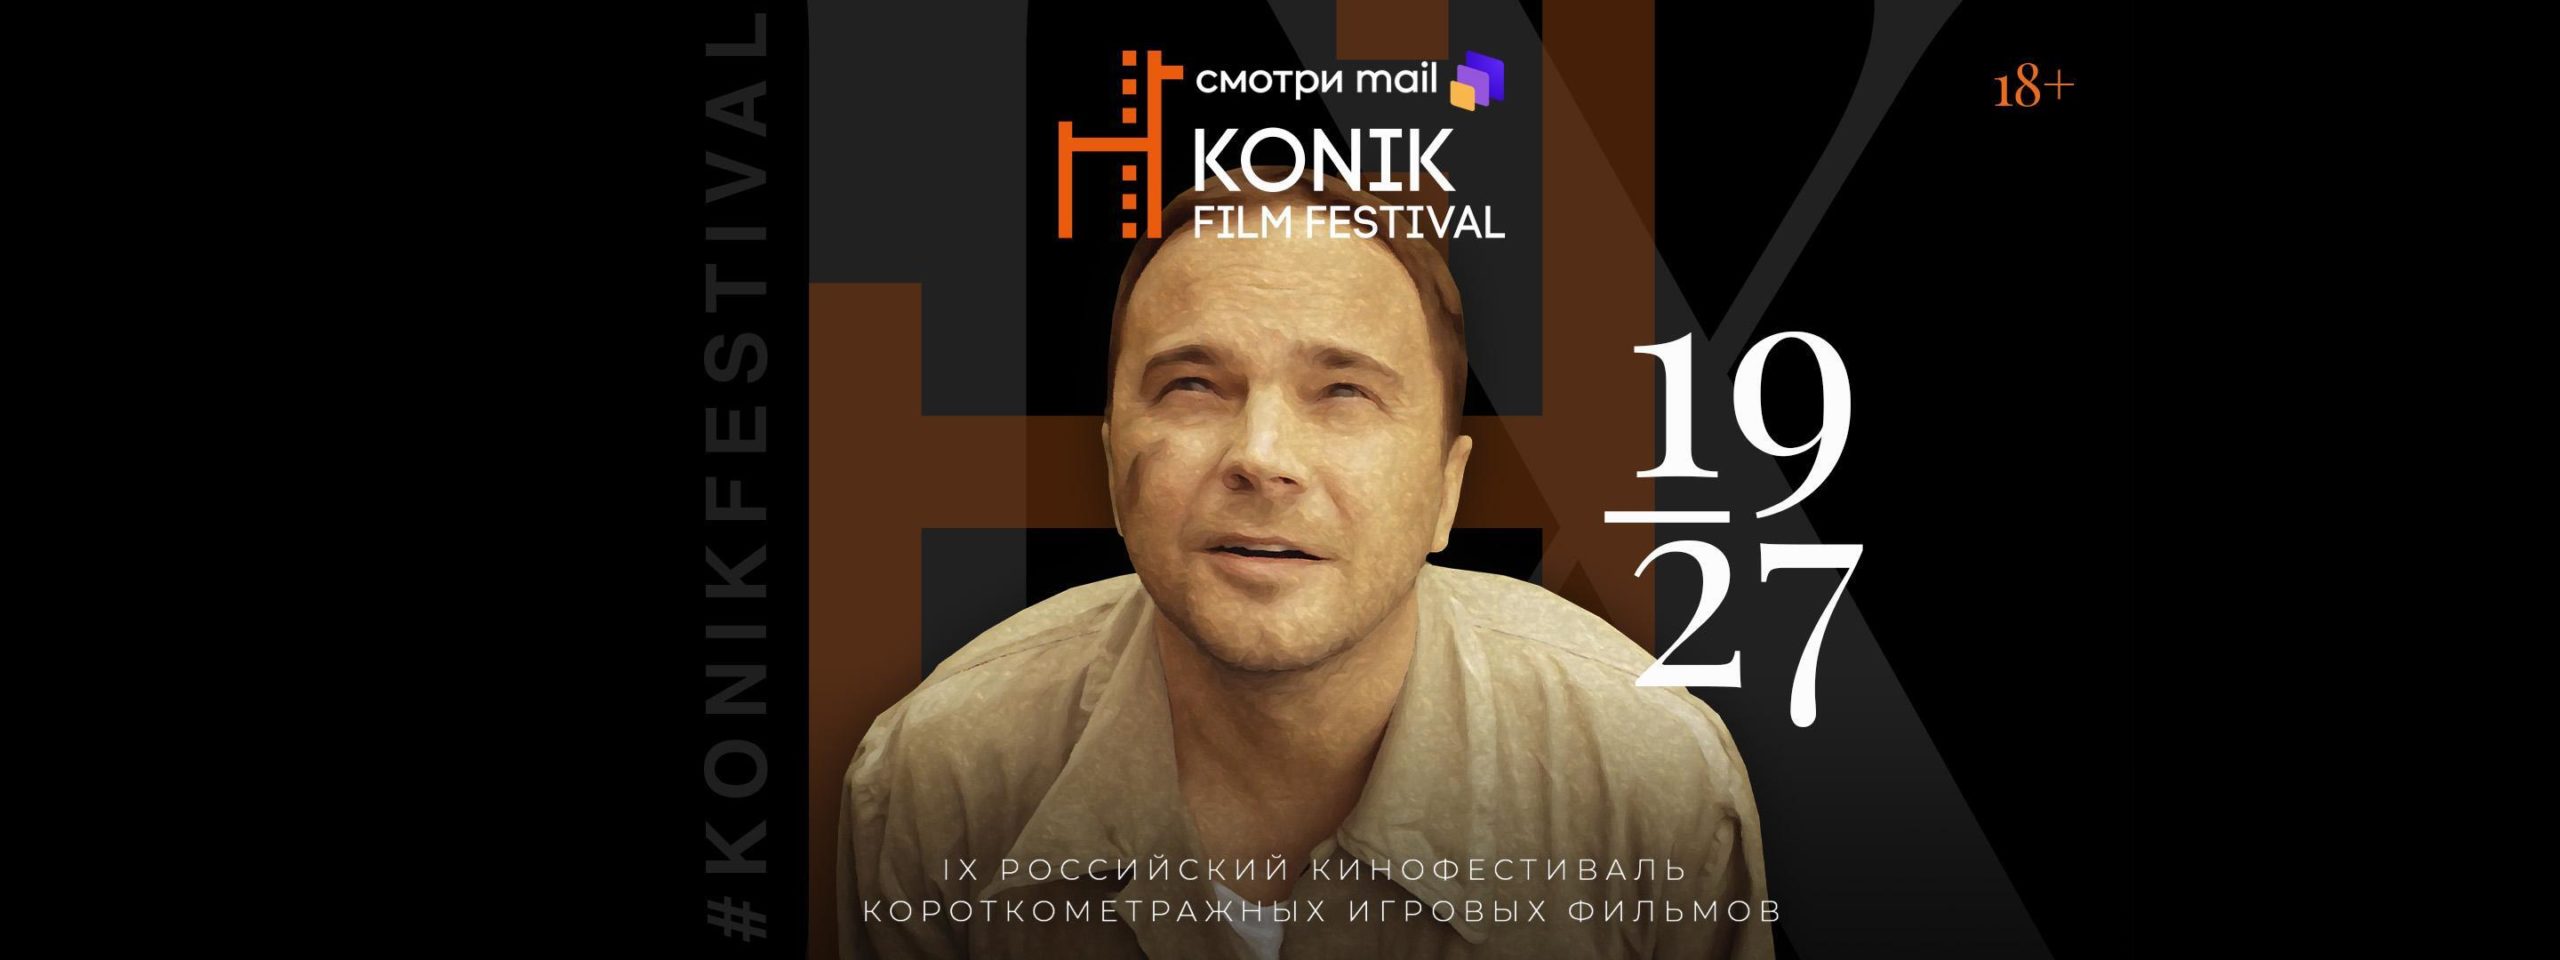 Konik Film Festival вновь проходит при поддержке НФПП